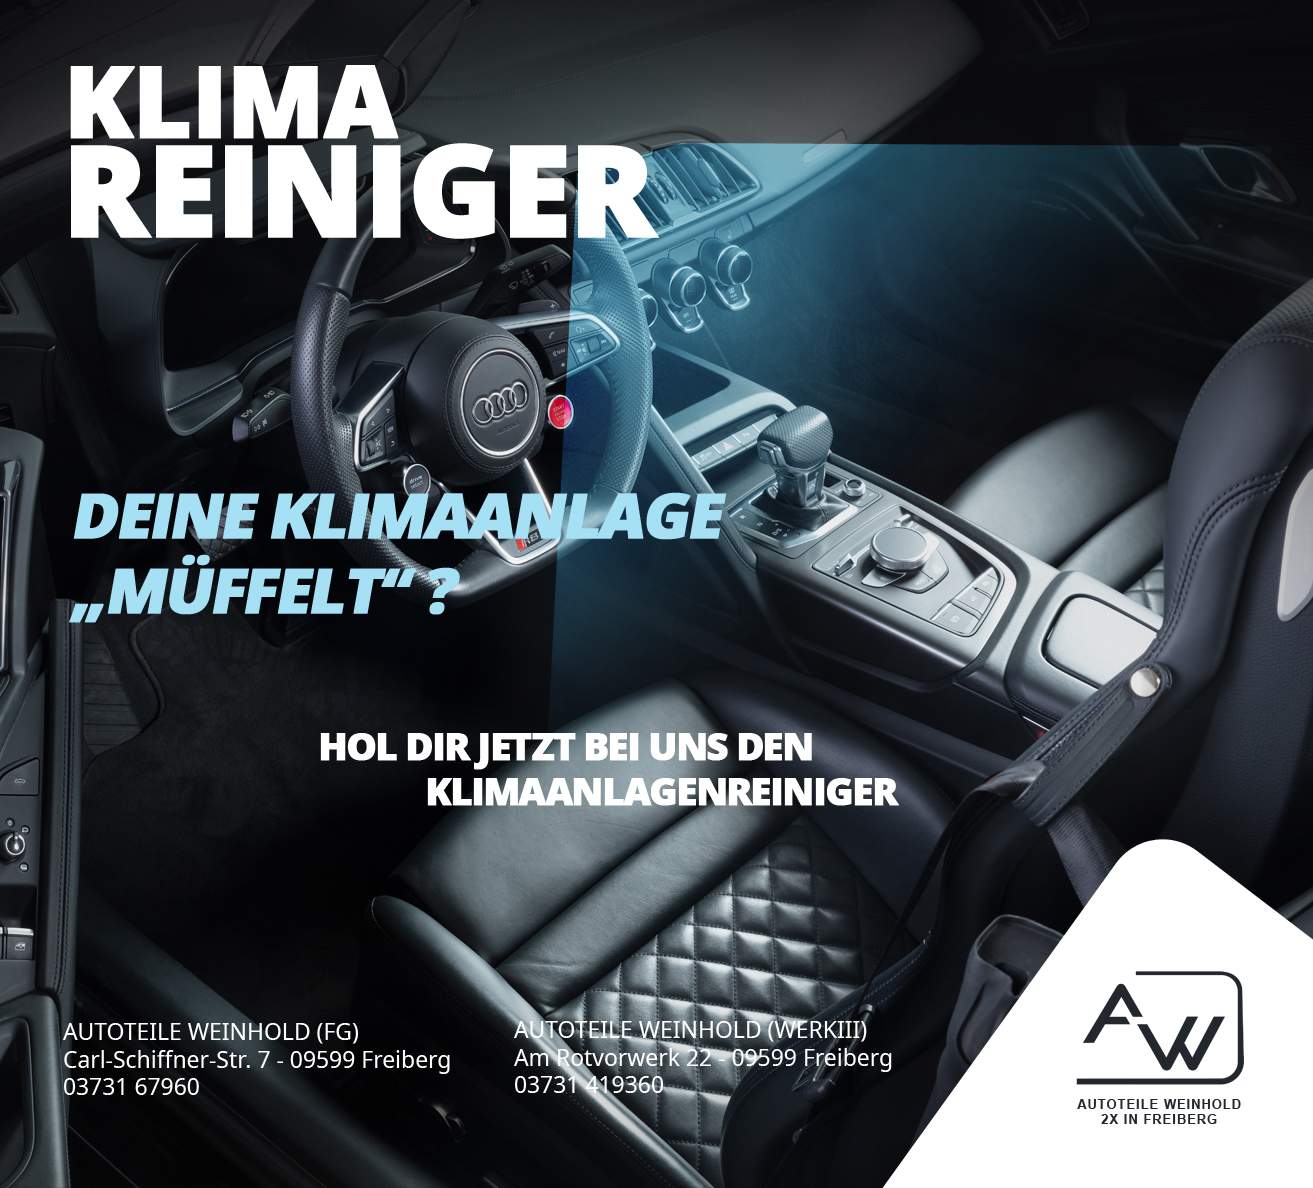 https://www.autoteile-weinhold.de/wp-content/uploads/2021/09/rowe_landravoer_KLIMAREINIGER.jpg